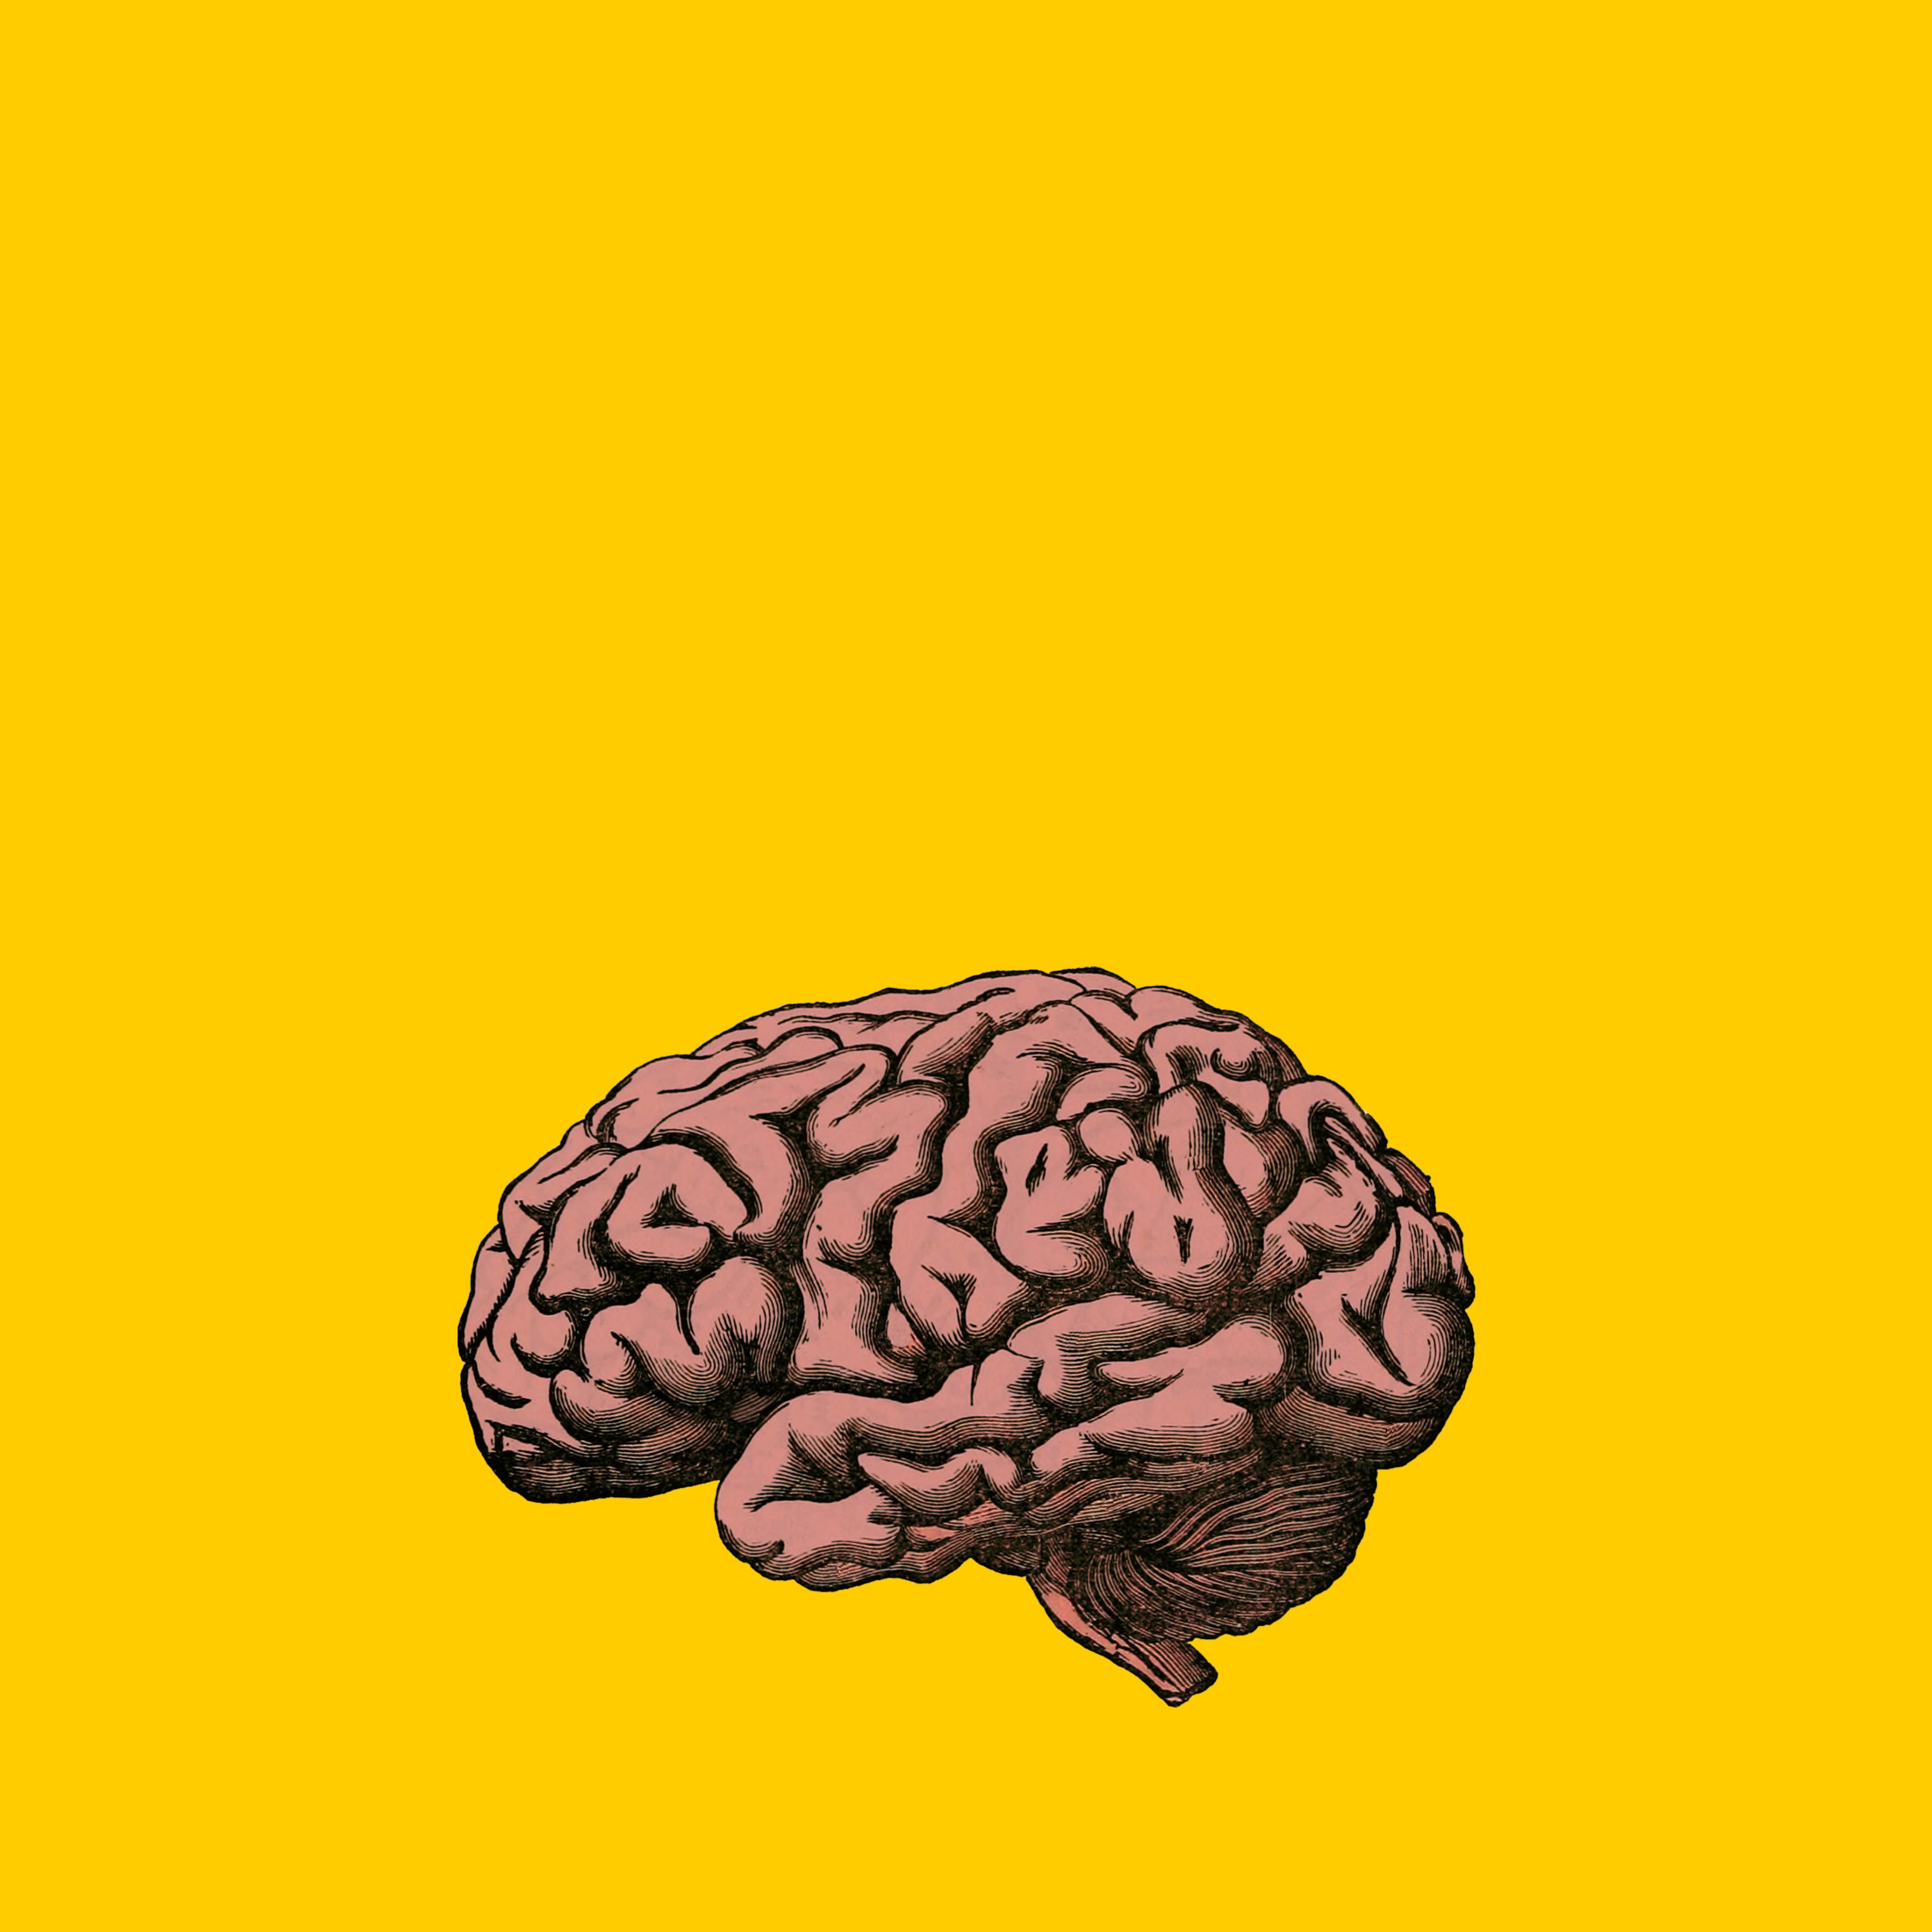 Descubren una mayor importancia del cerebelo en el cerebro de las personas